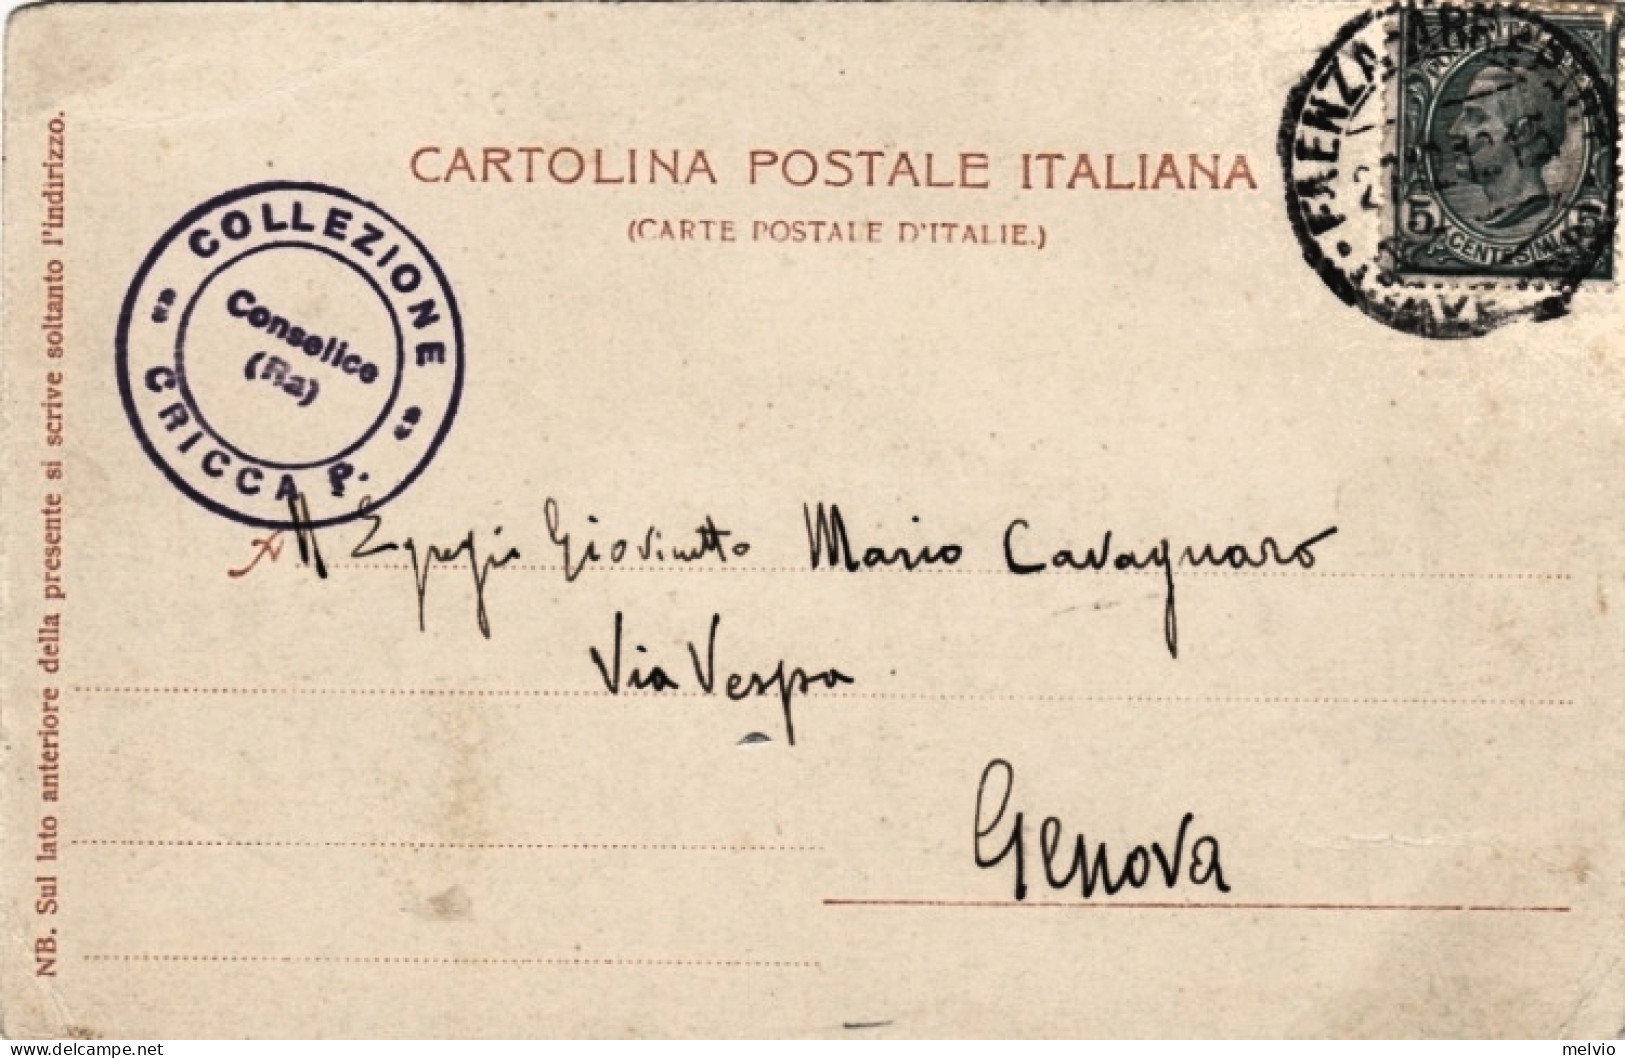 1912-Mordano Bologna, Torri Gemelle, Animata, Mordano Ex Provincia Ravenna, Viag - Bologna